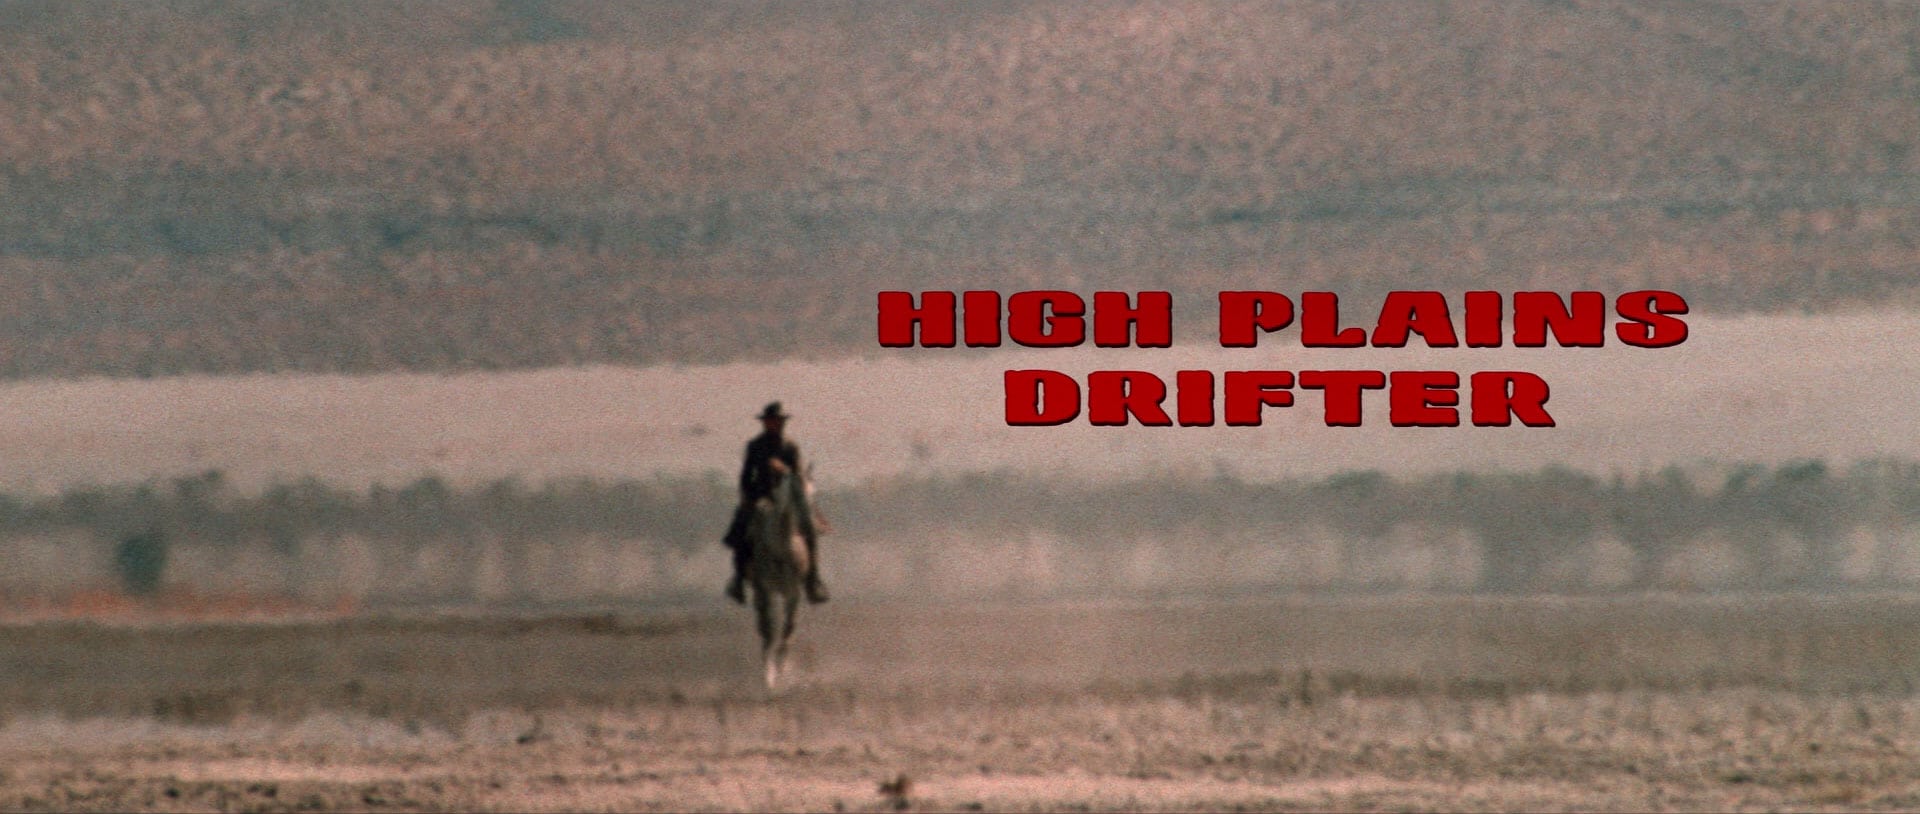 High Plains Drifter